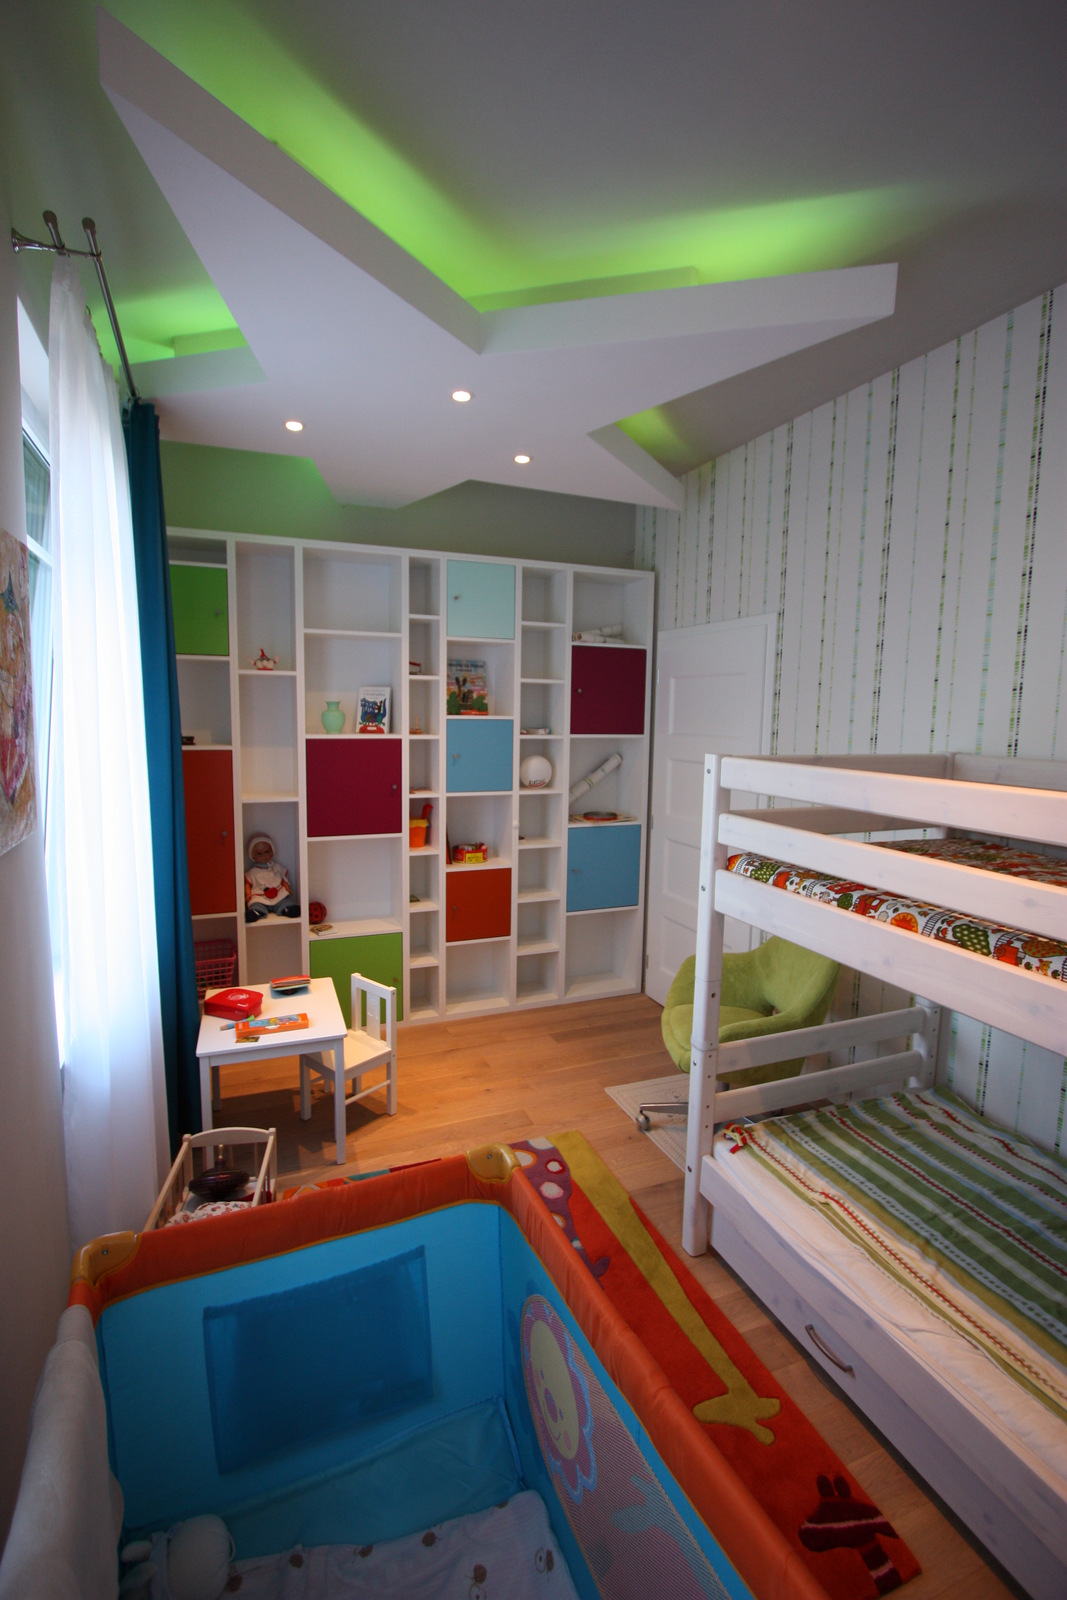 Gyerekszoba különleges álmennyezettel / Kids room with special ceiling